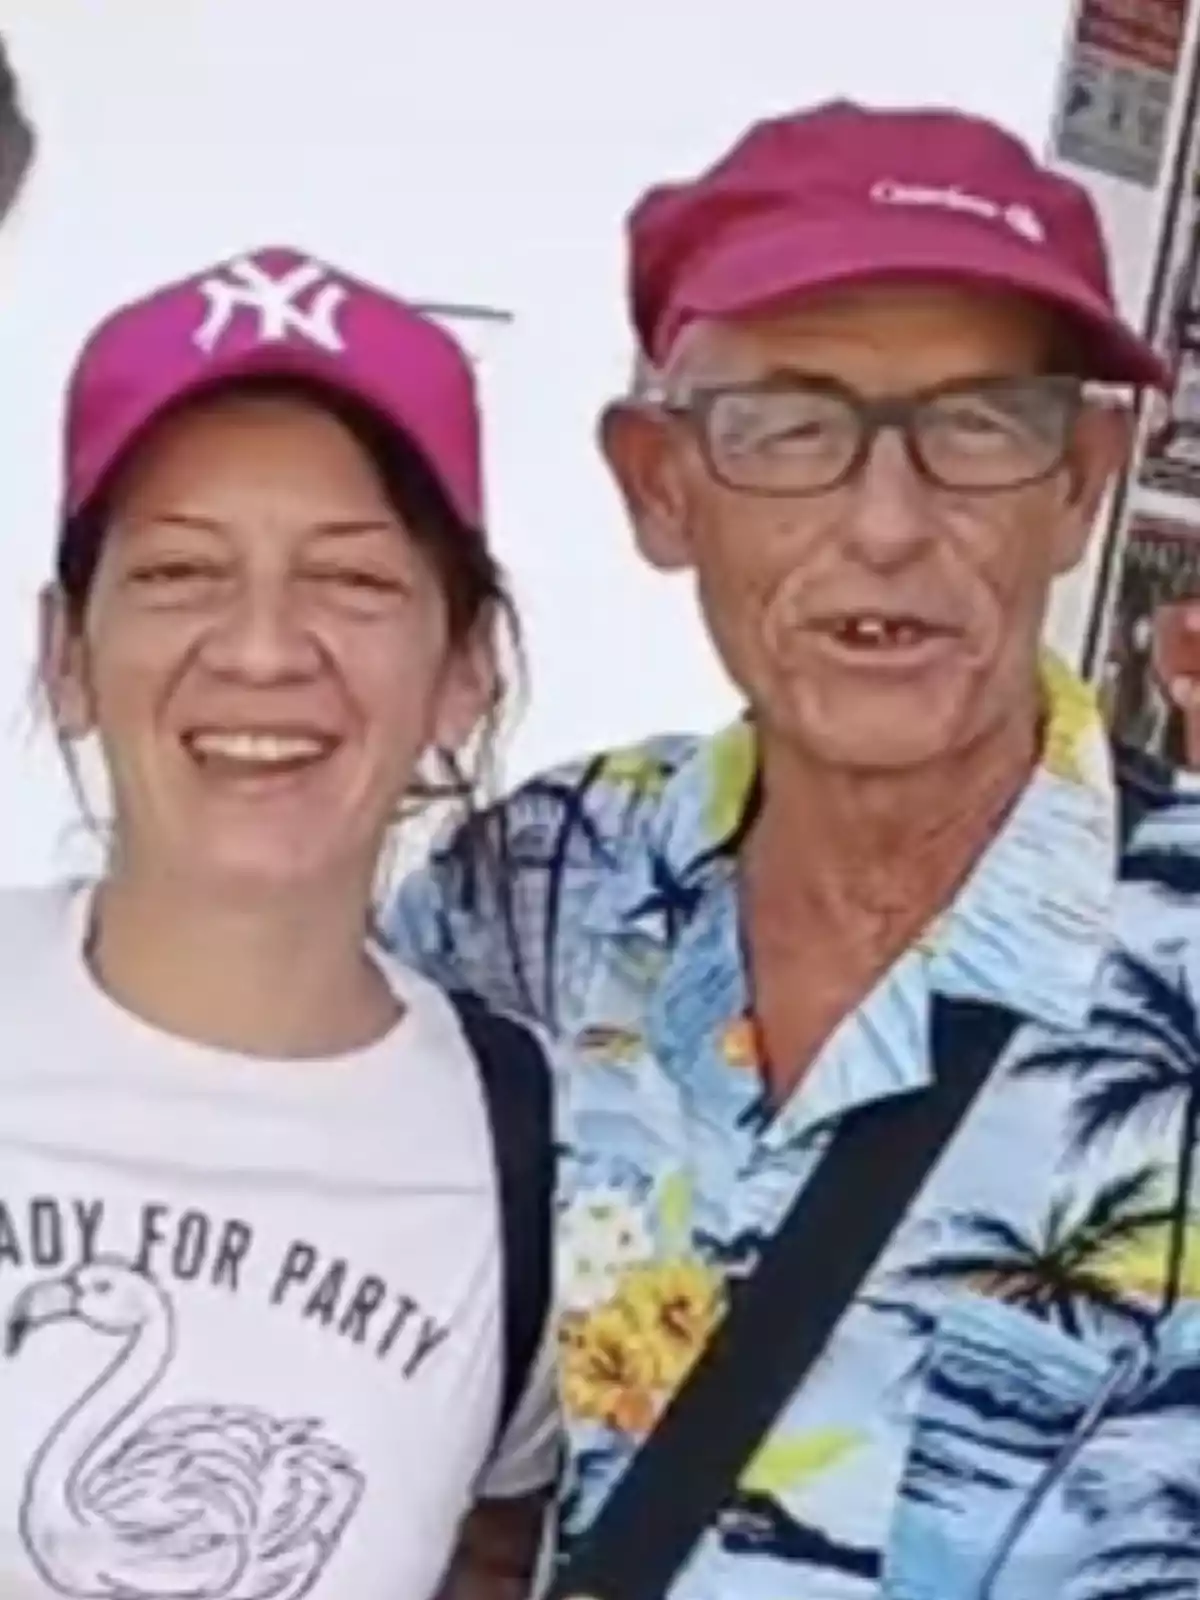 Dos personas sonrientes con gorras rosas, una con camiseta blanca y la otra con camisa hawaiana.